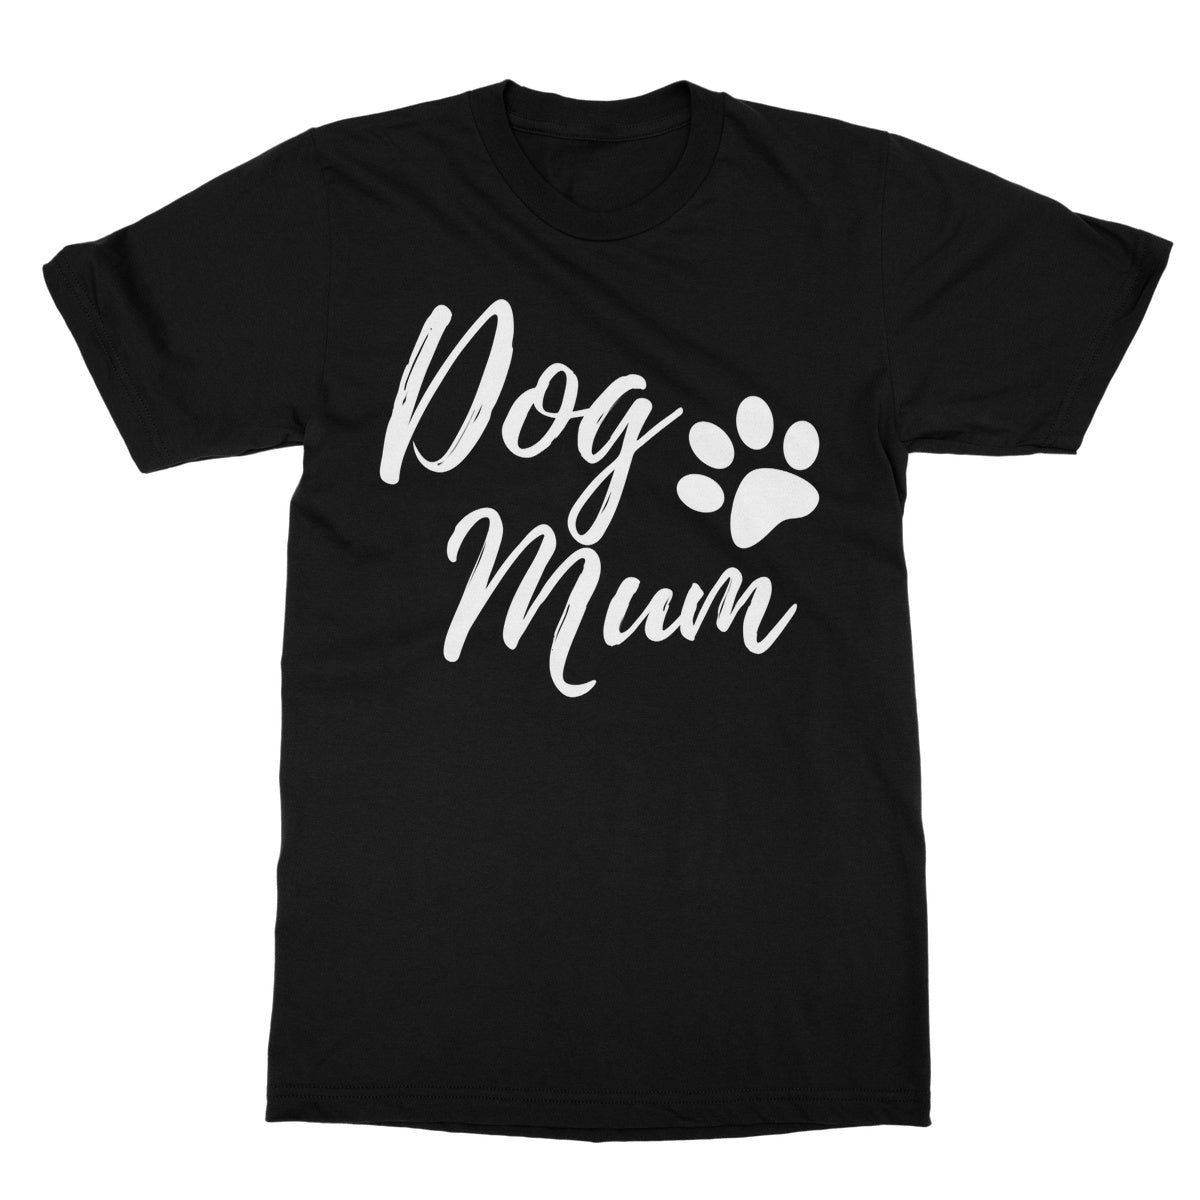 dog mum t shirt black